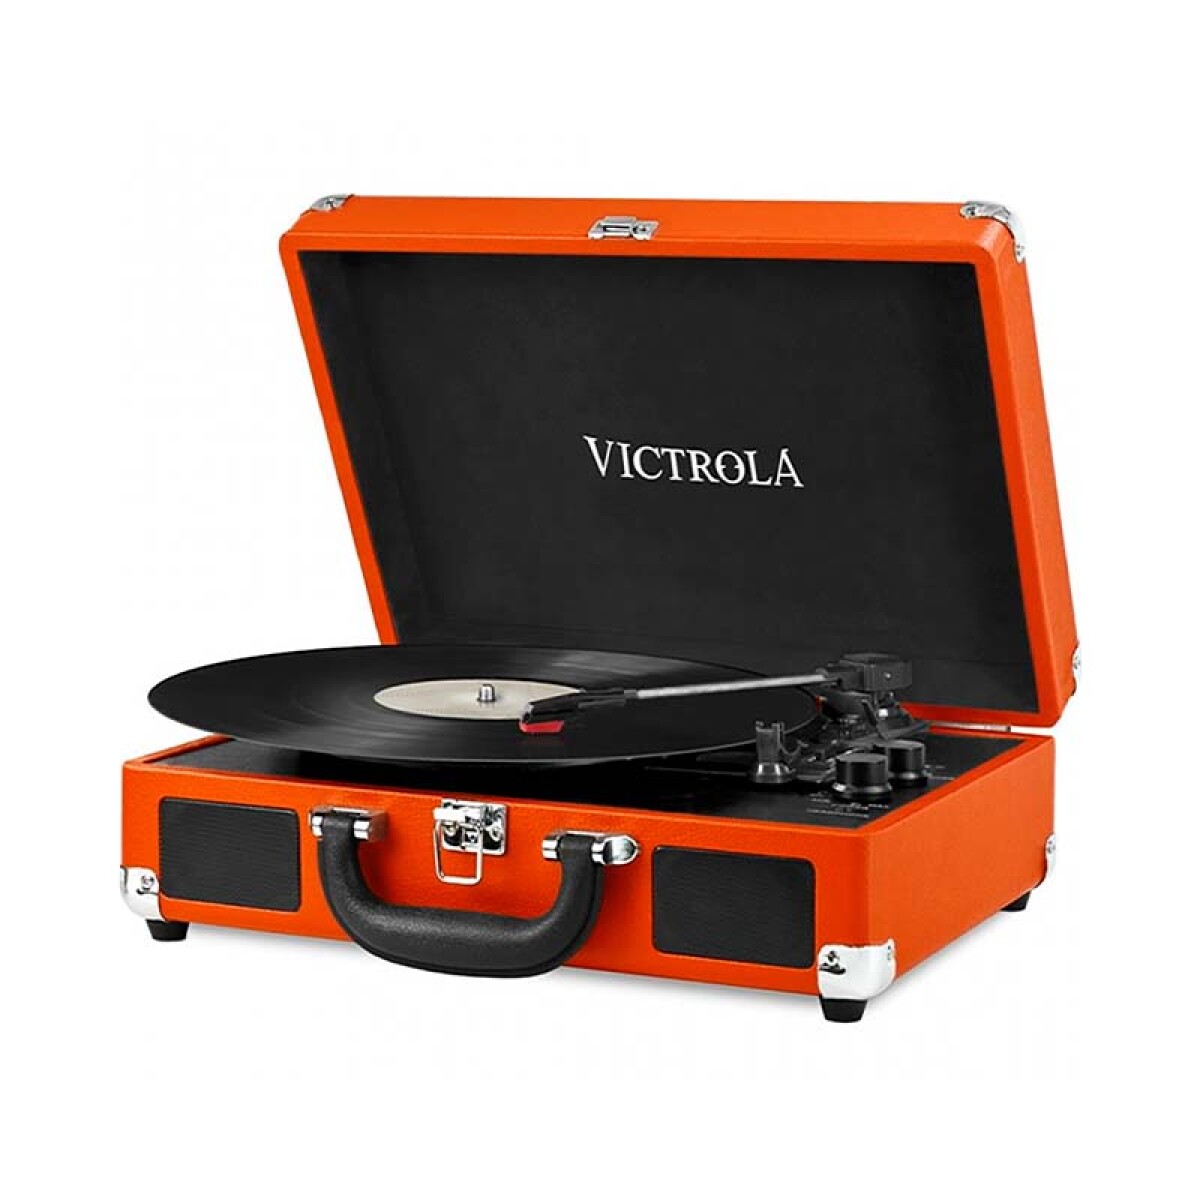 Victrola Vintage 3 Speed maleta naranja - Unica 